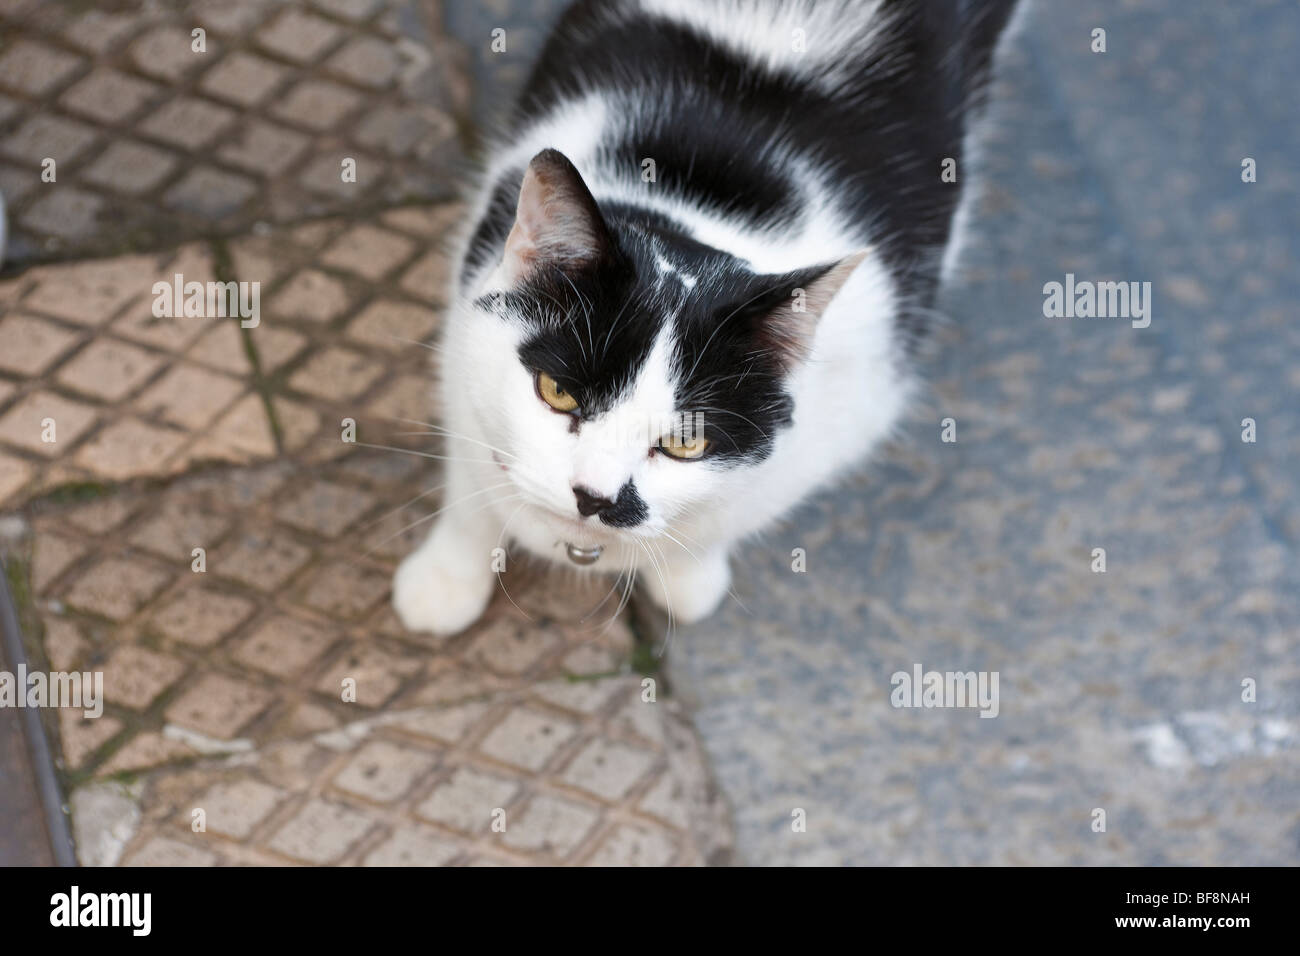 Cat that looks like Hitler ' Kitler ' Stock Photo